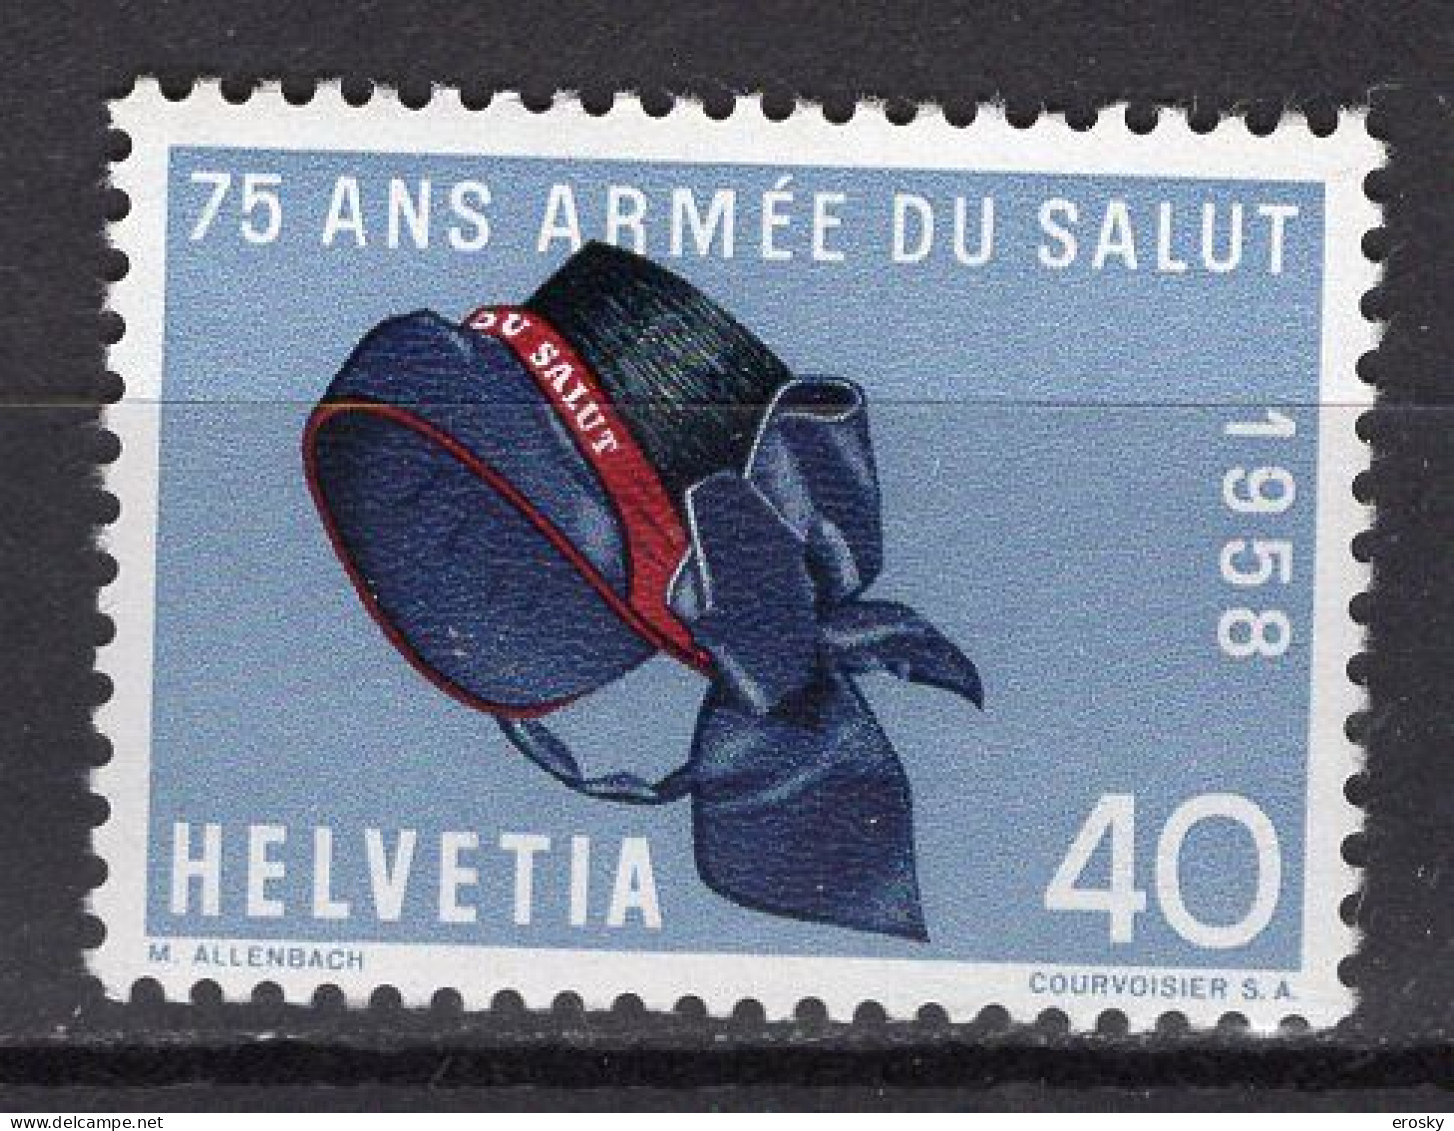 T3452 - SUISSE SWITZERLAND Yv N°605 ** - Unused Stamps